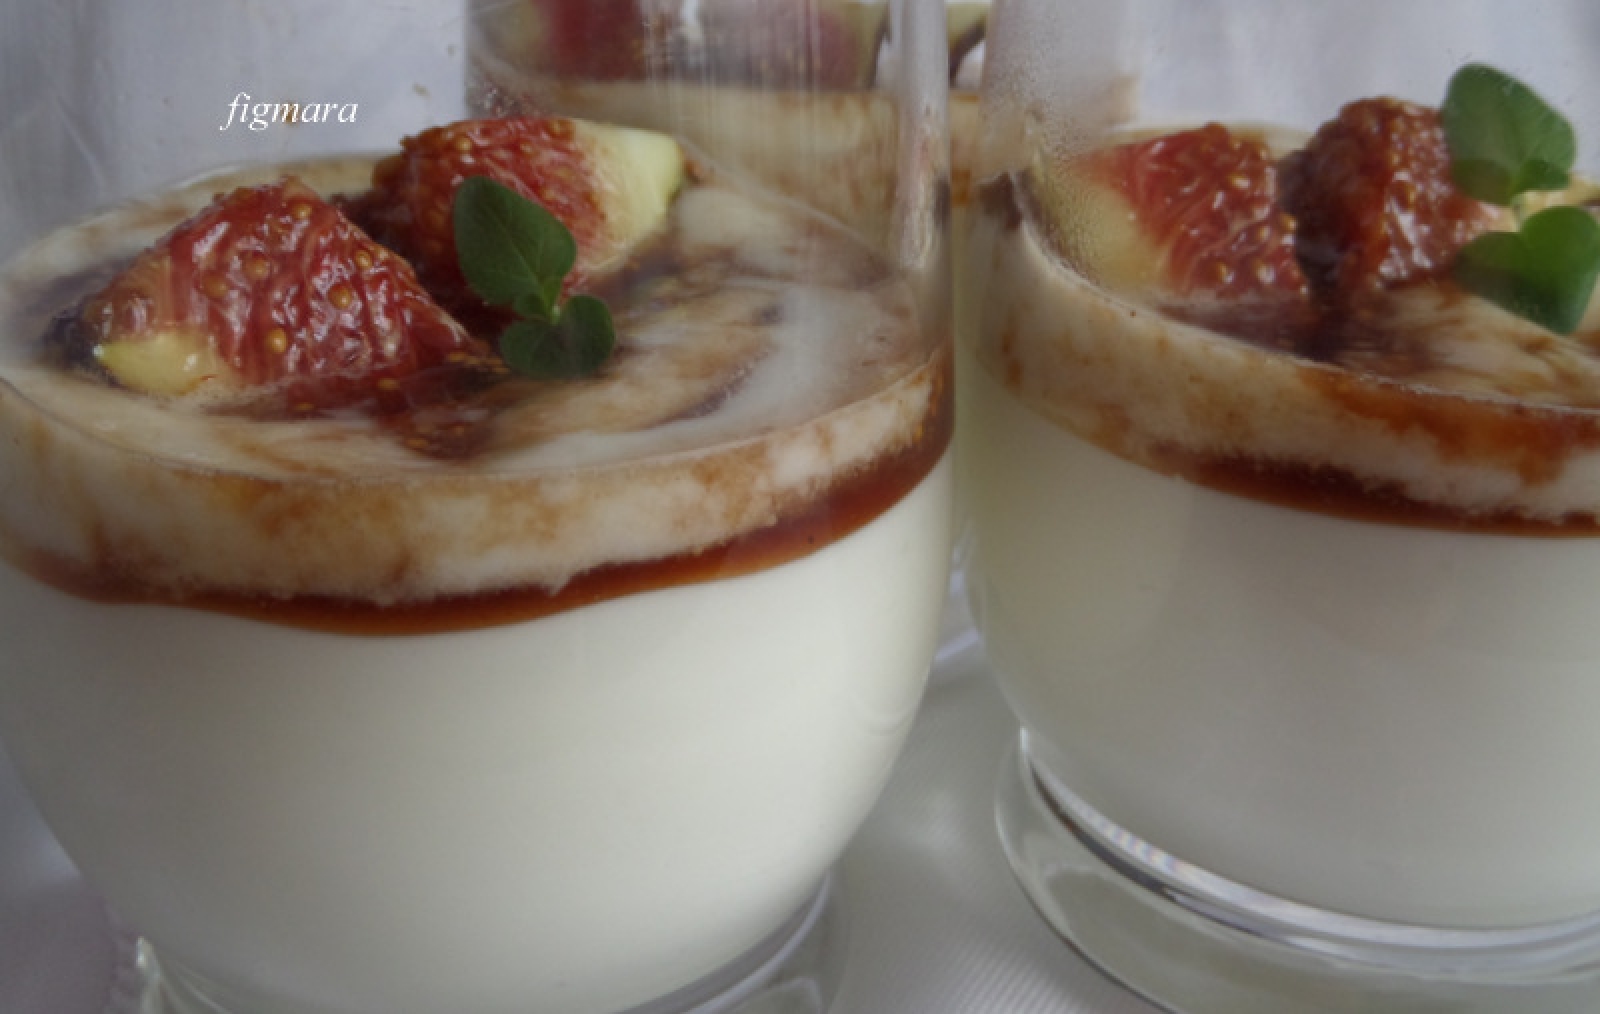 Jogurtowo-śmietankowy deser z figami